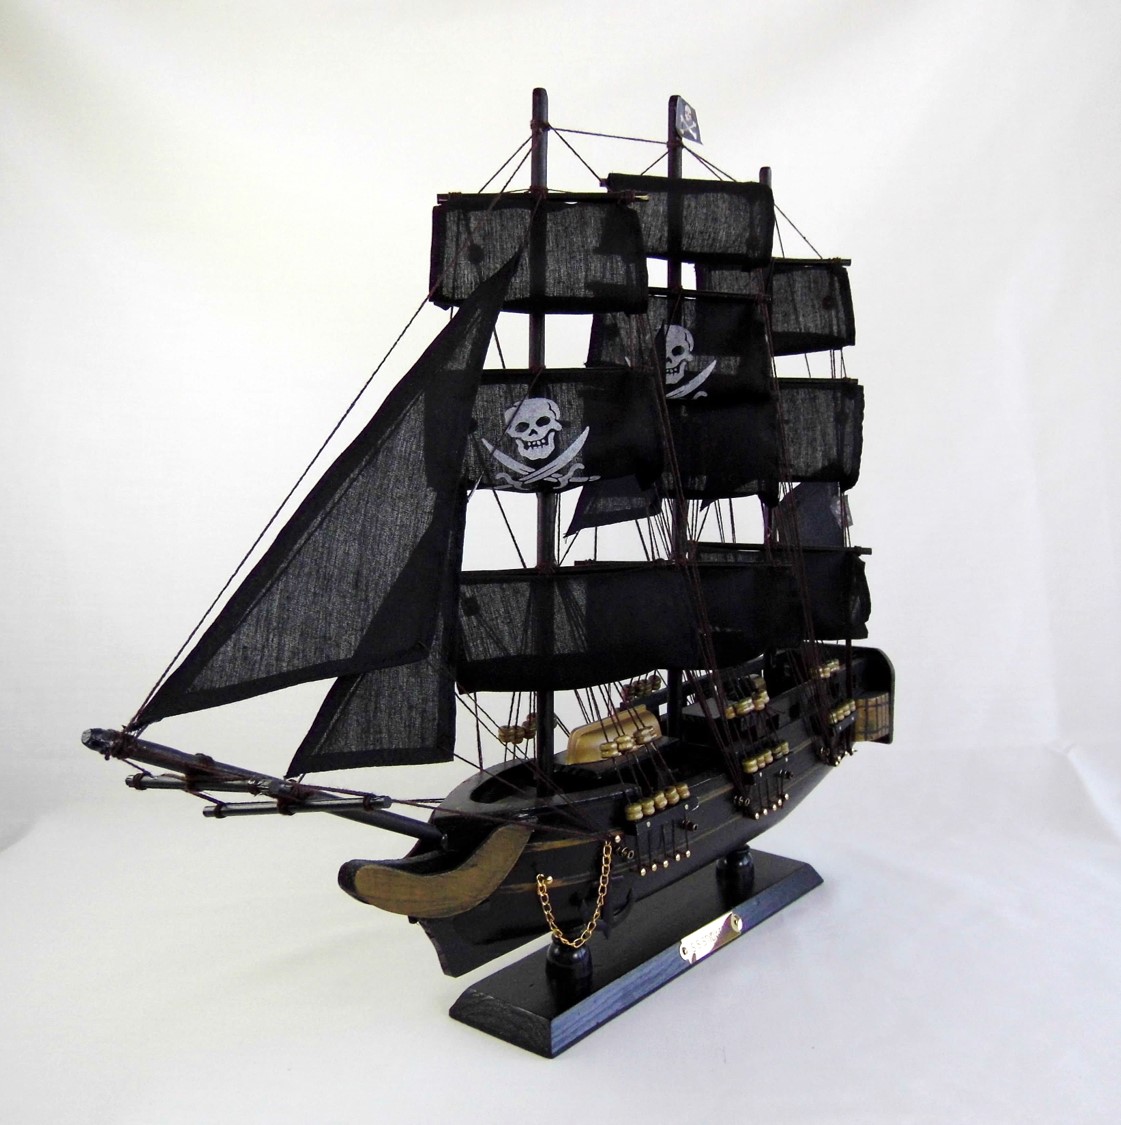 Barco-ornamental-de-3-mastiles-modelo-Pirata-2.jpg